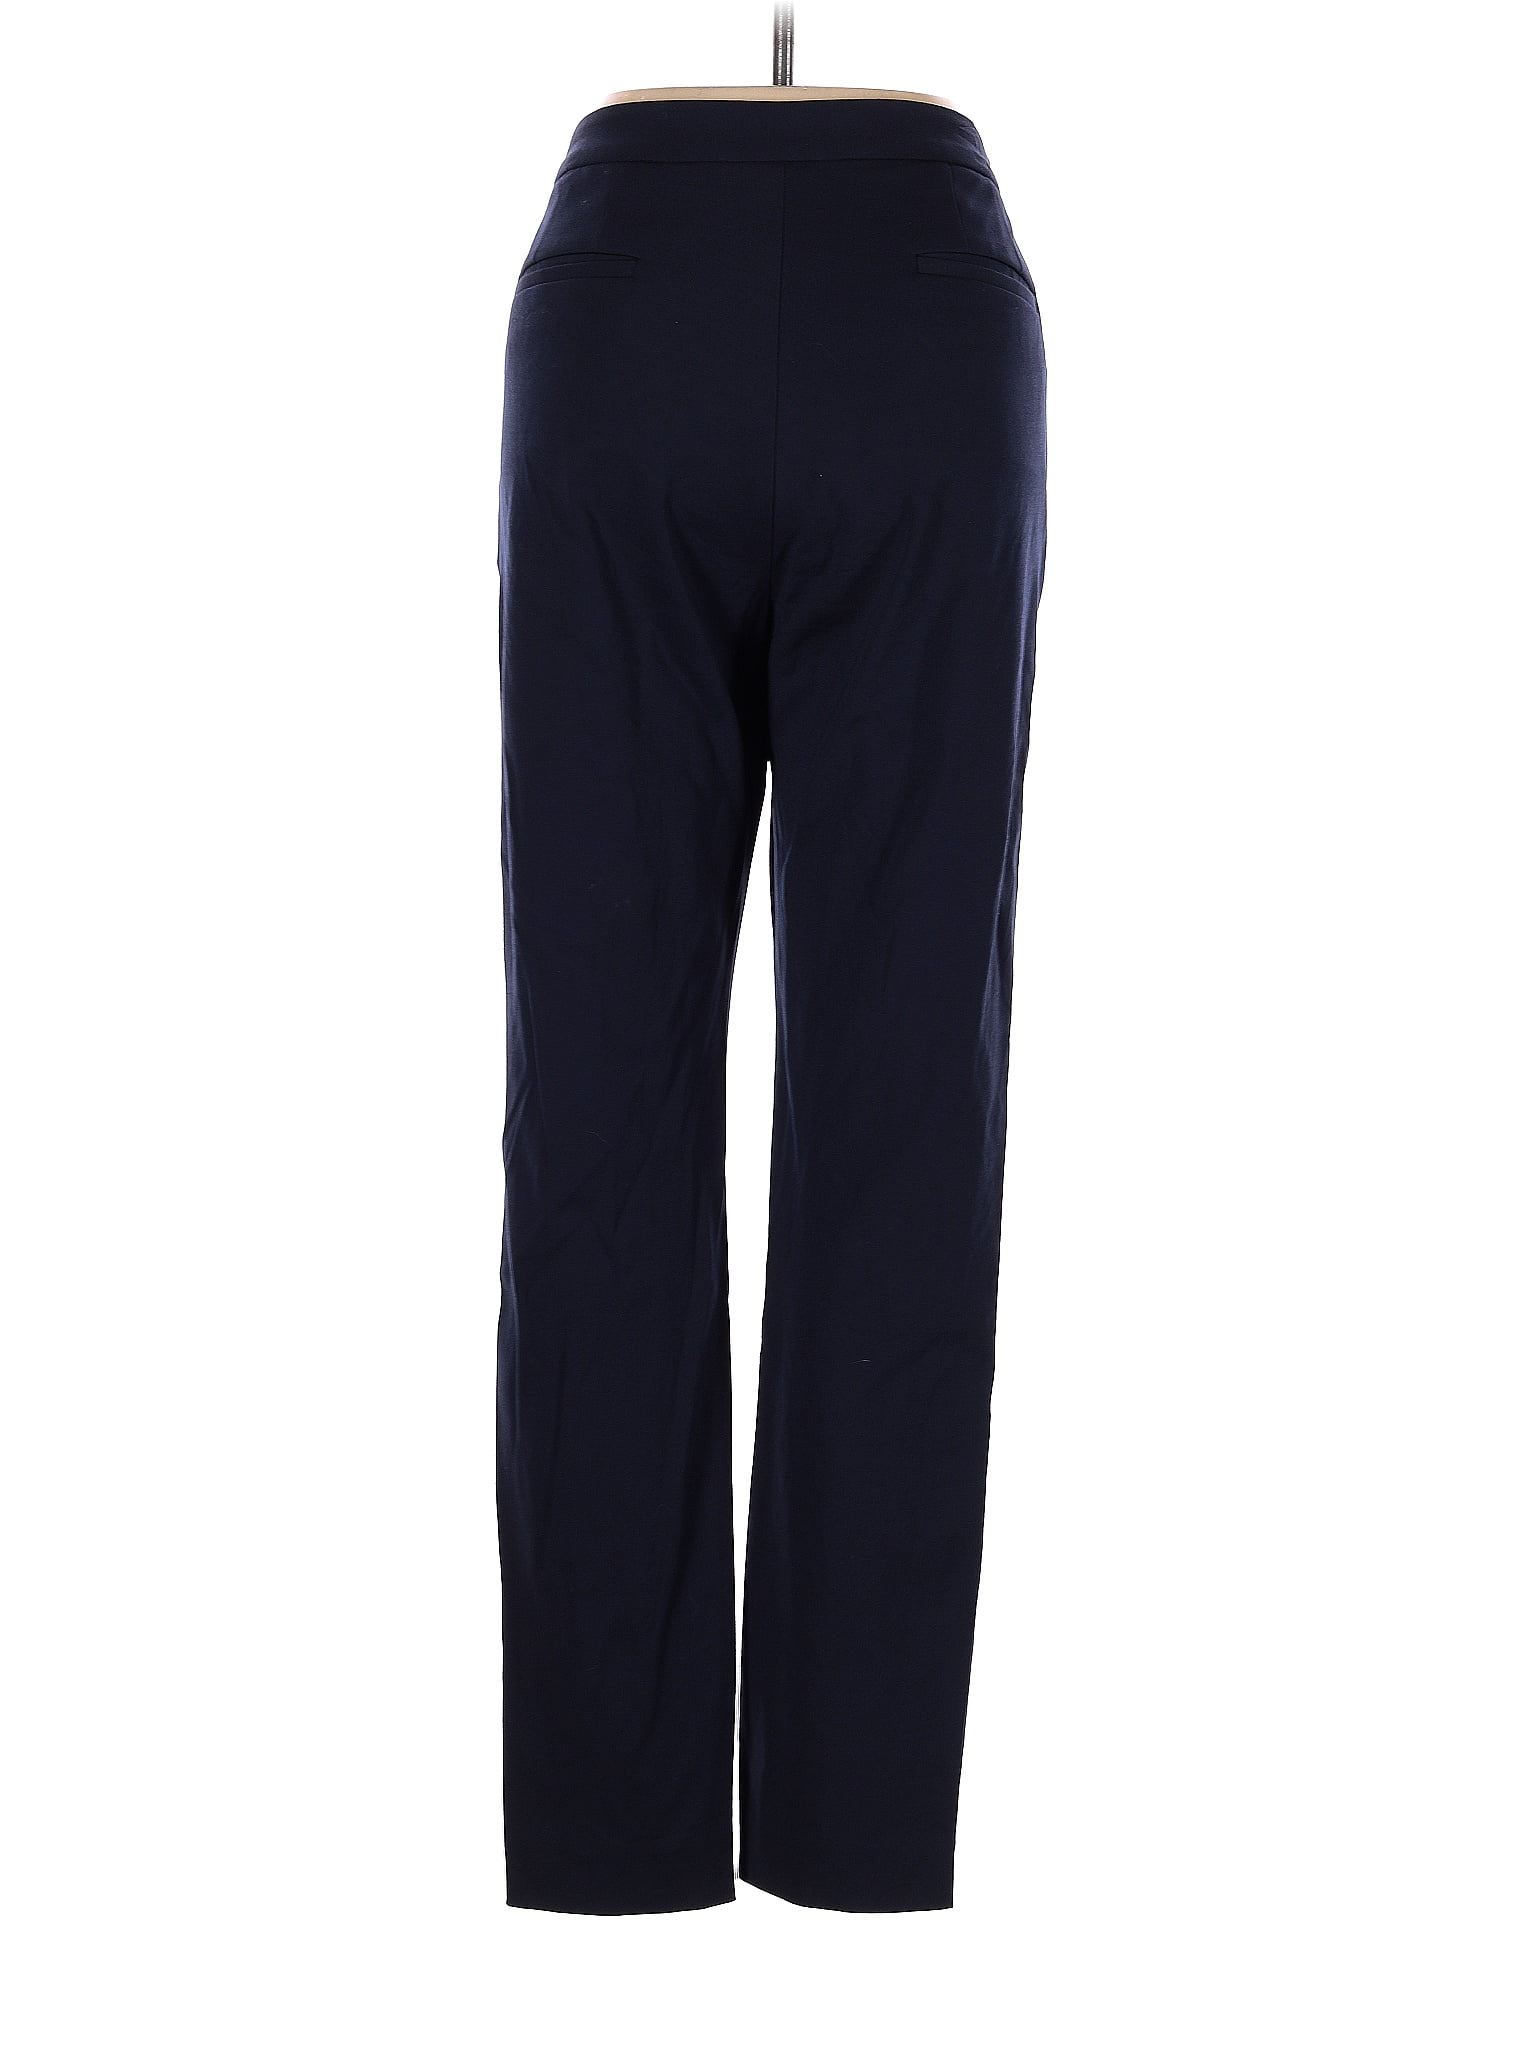 Prescott New York Polka Dots Navy Blue Dress Pants Size 22 (Plus) - 75% off